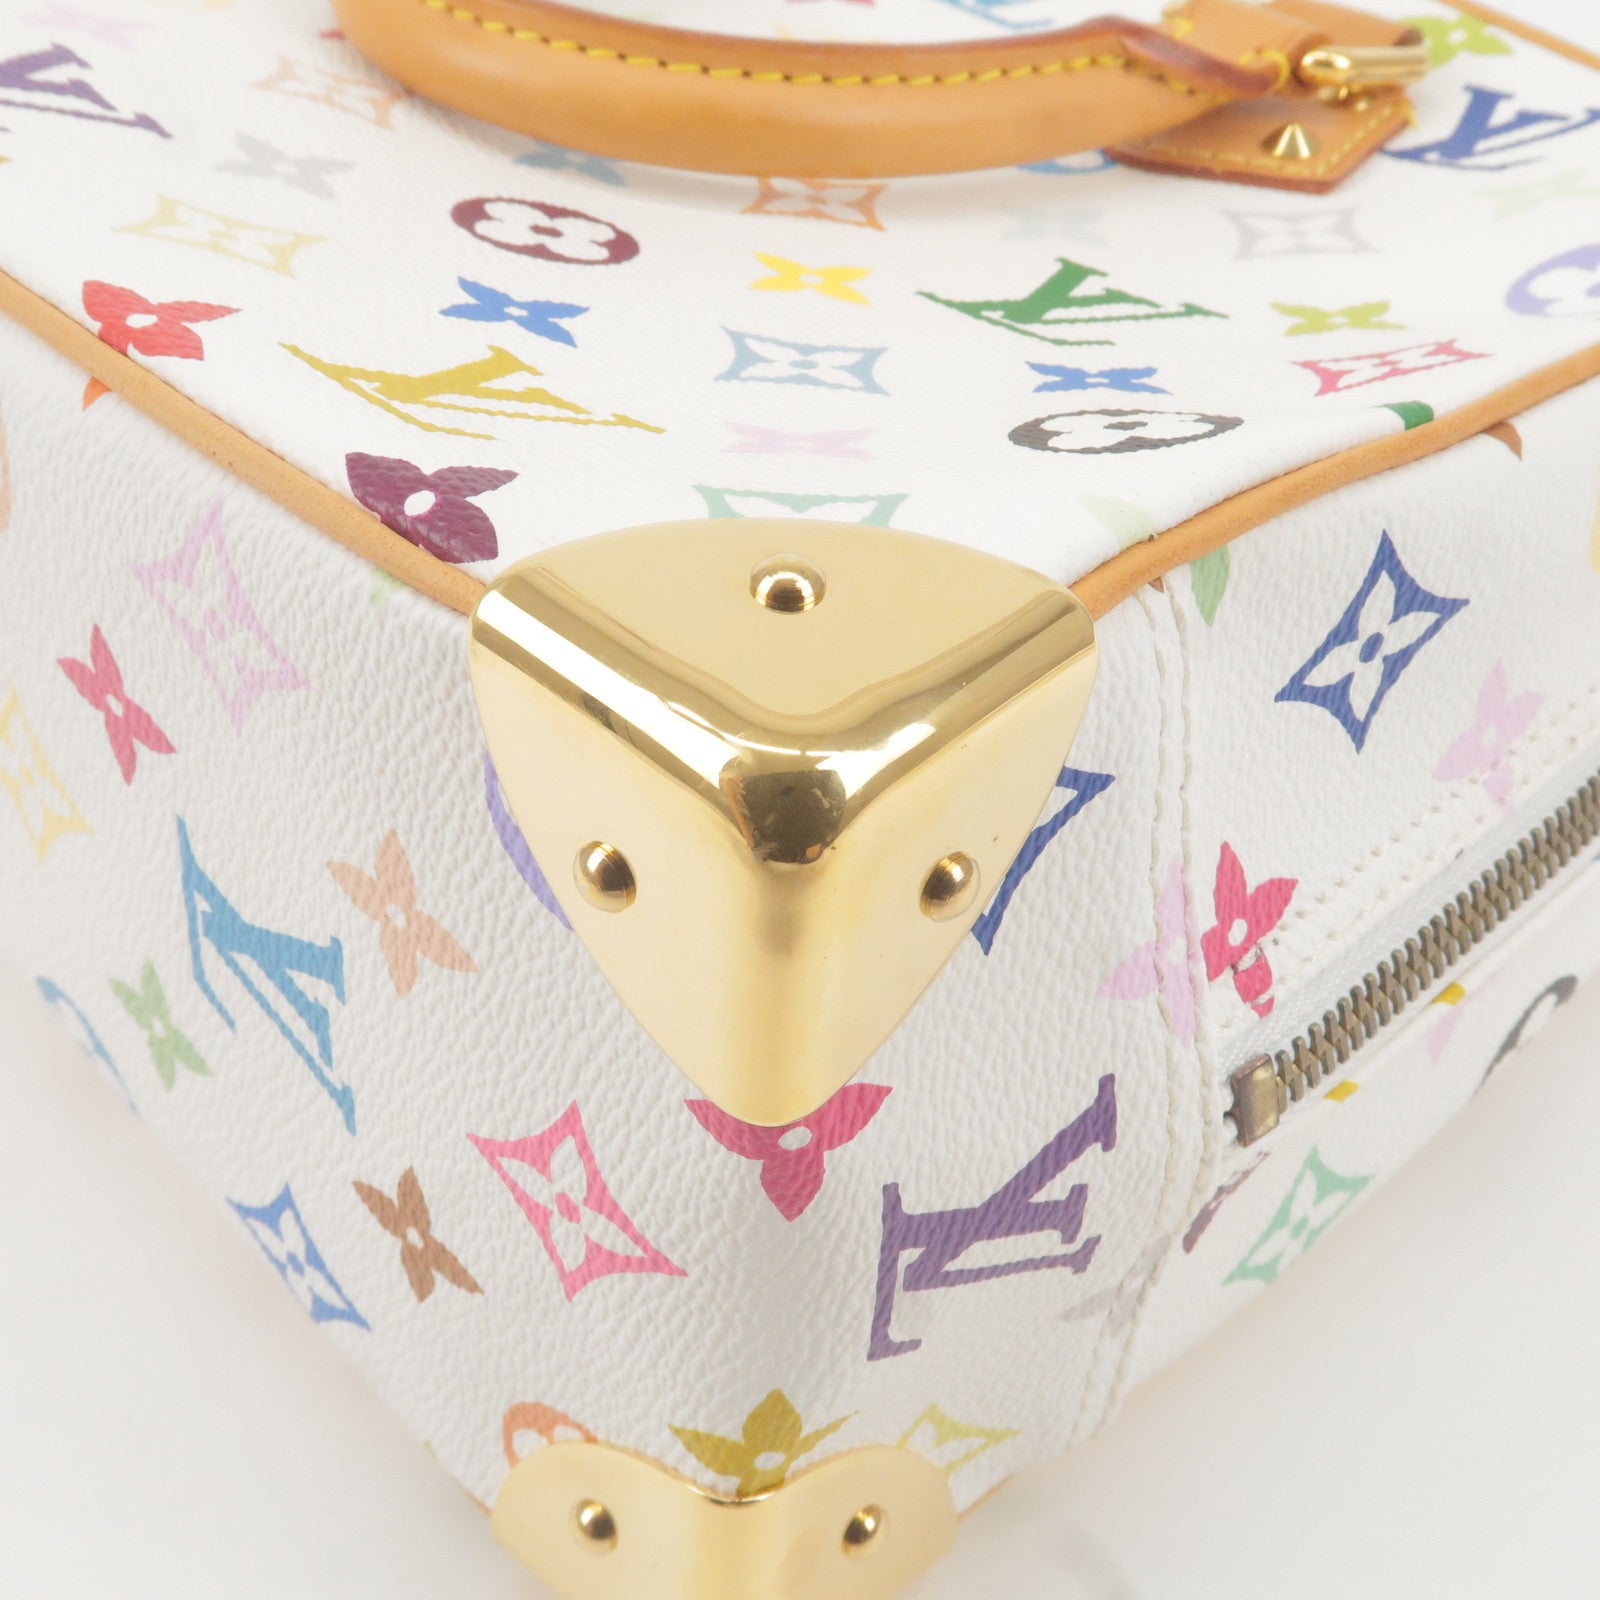 LOUIS VUITTON Louis Vuitton Monogram Multicolor Trouville Handbag Bron  M92663